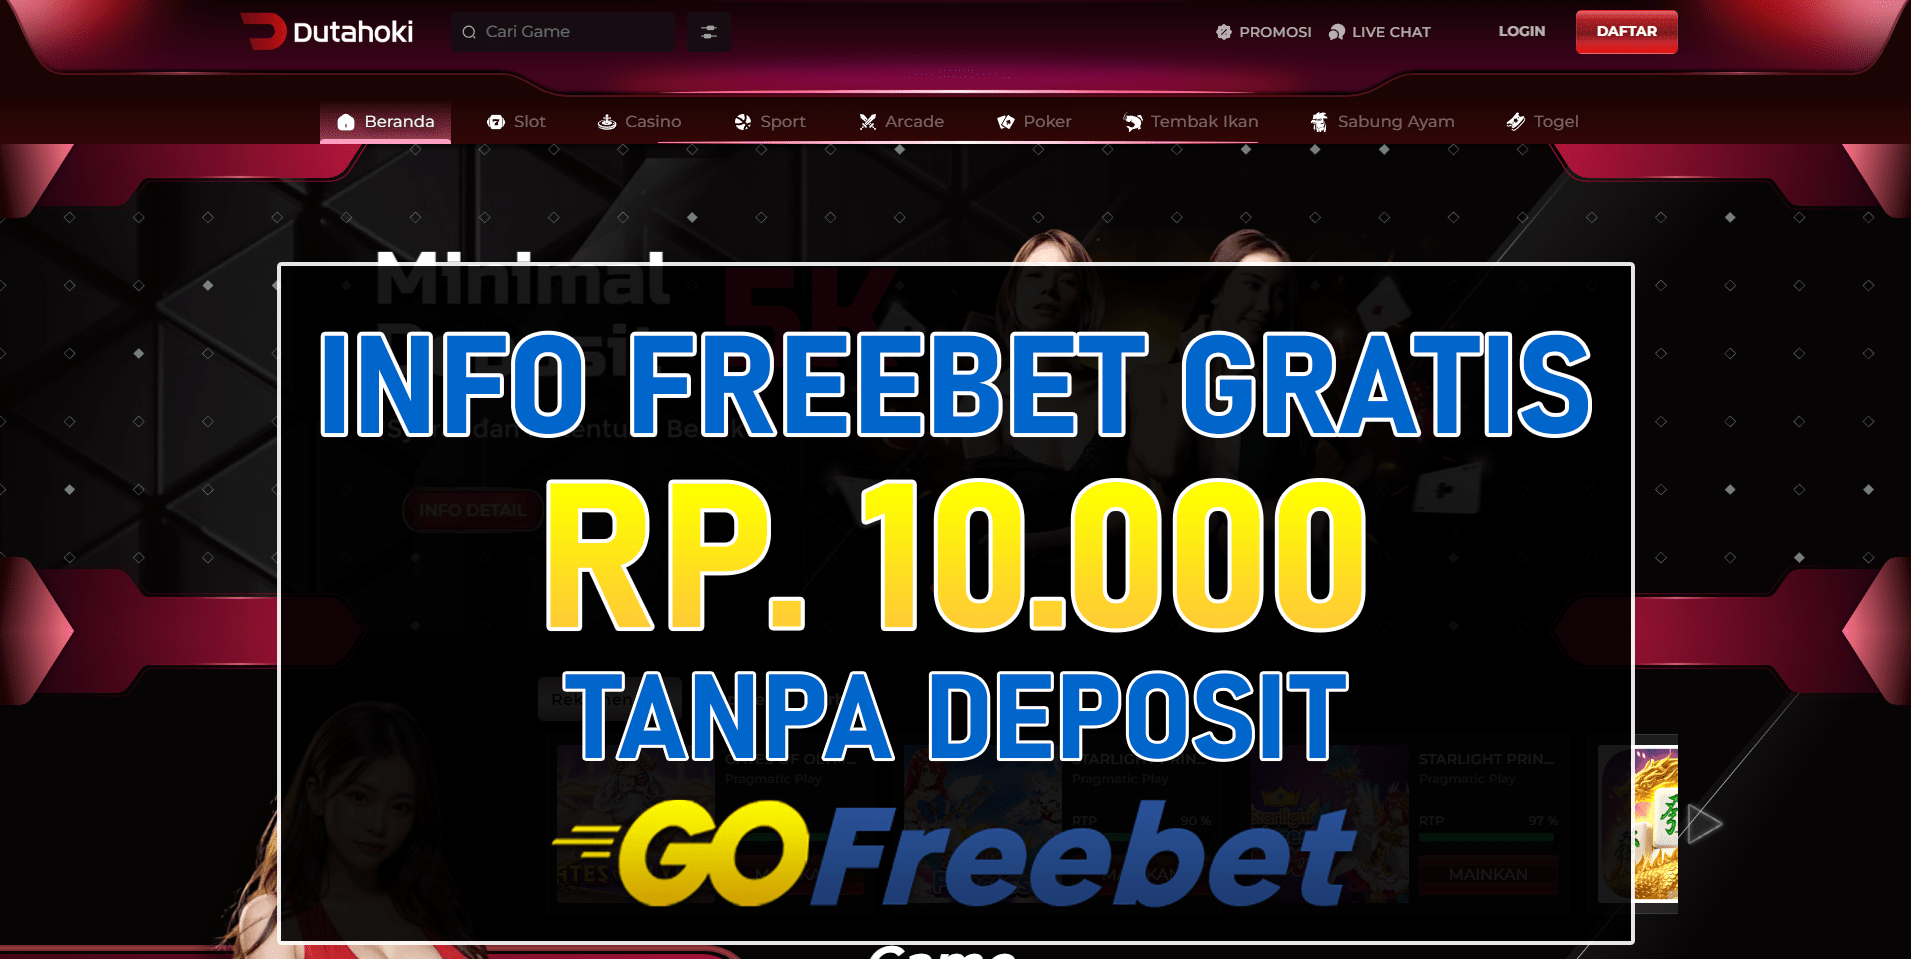 Dutahoki Freebet Gratis Rp 10.000 Tanpa Deposit